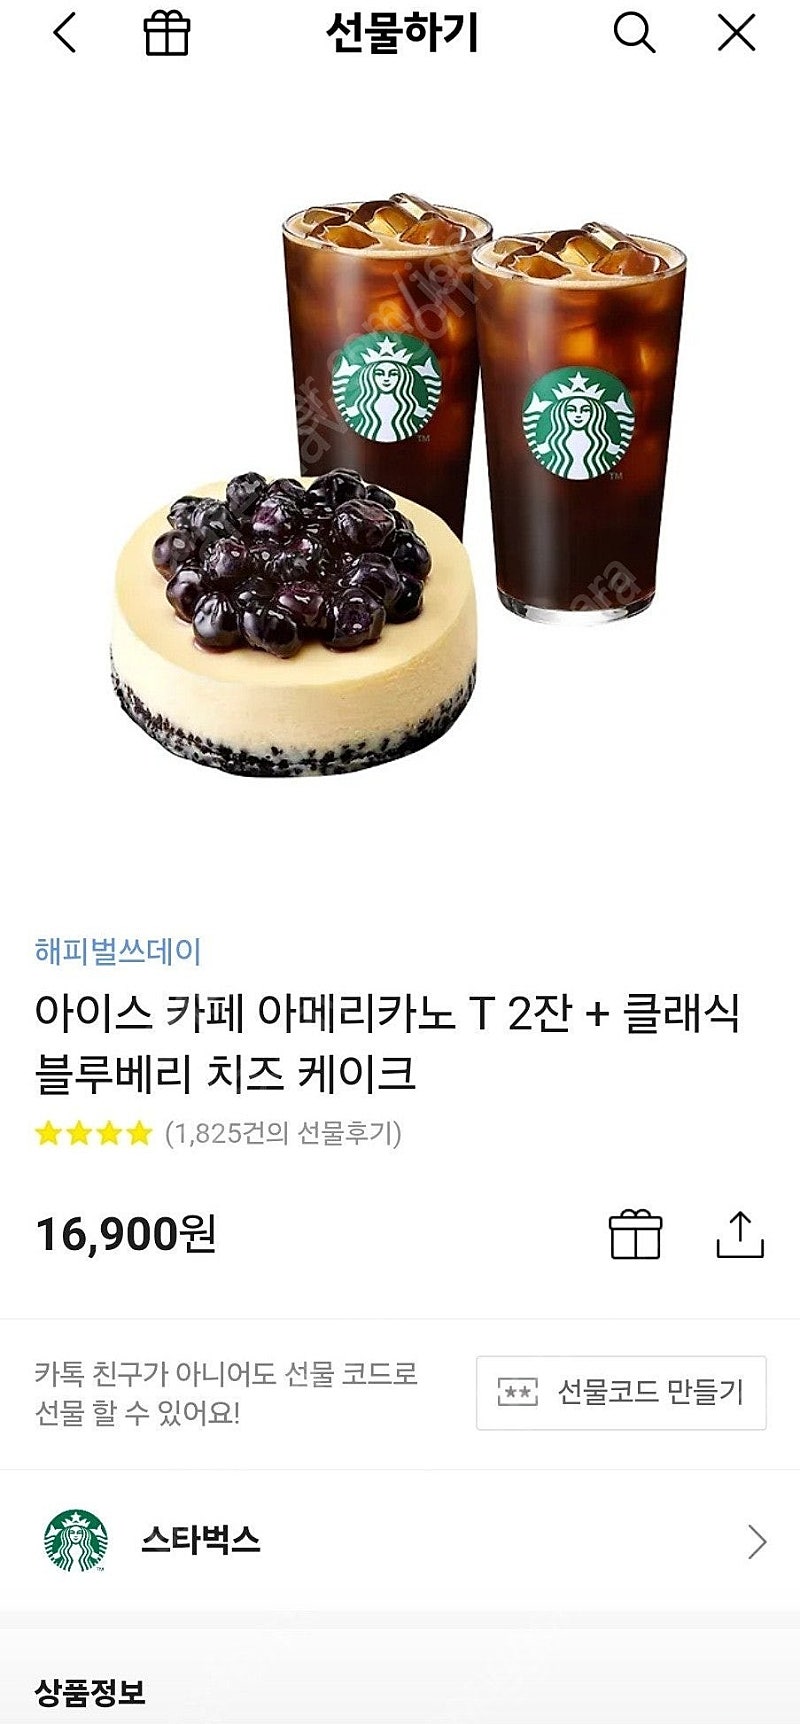 스타벅스 아이스 카페 아메리카노 T 2잔 + 클래식 블루베리 치즈 케이크 << 팝니다